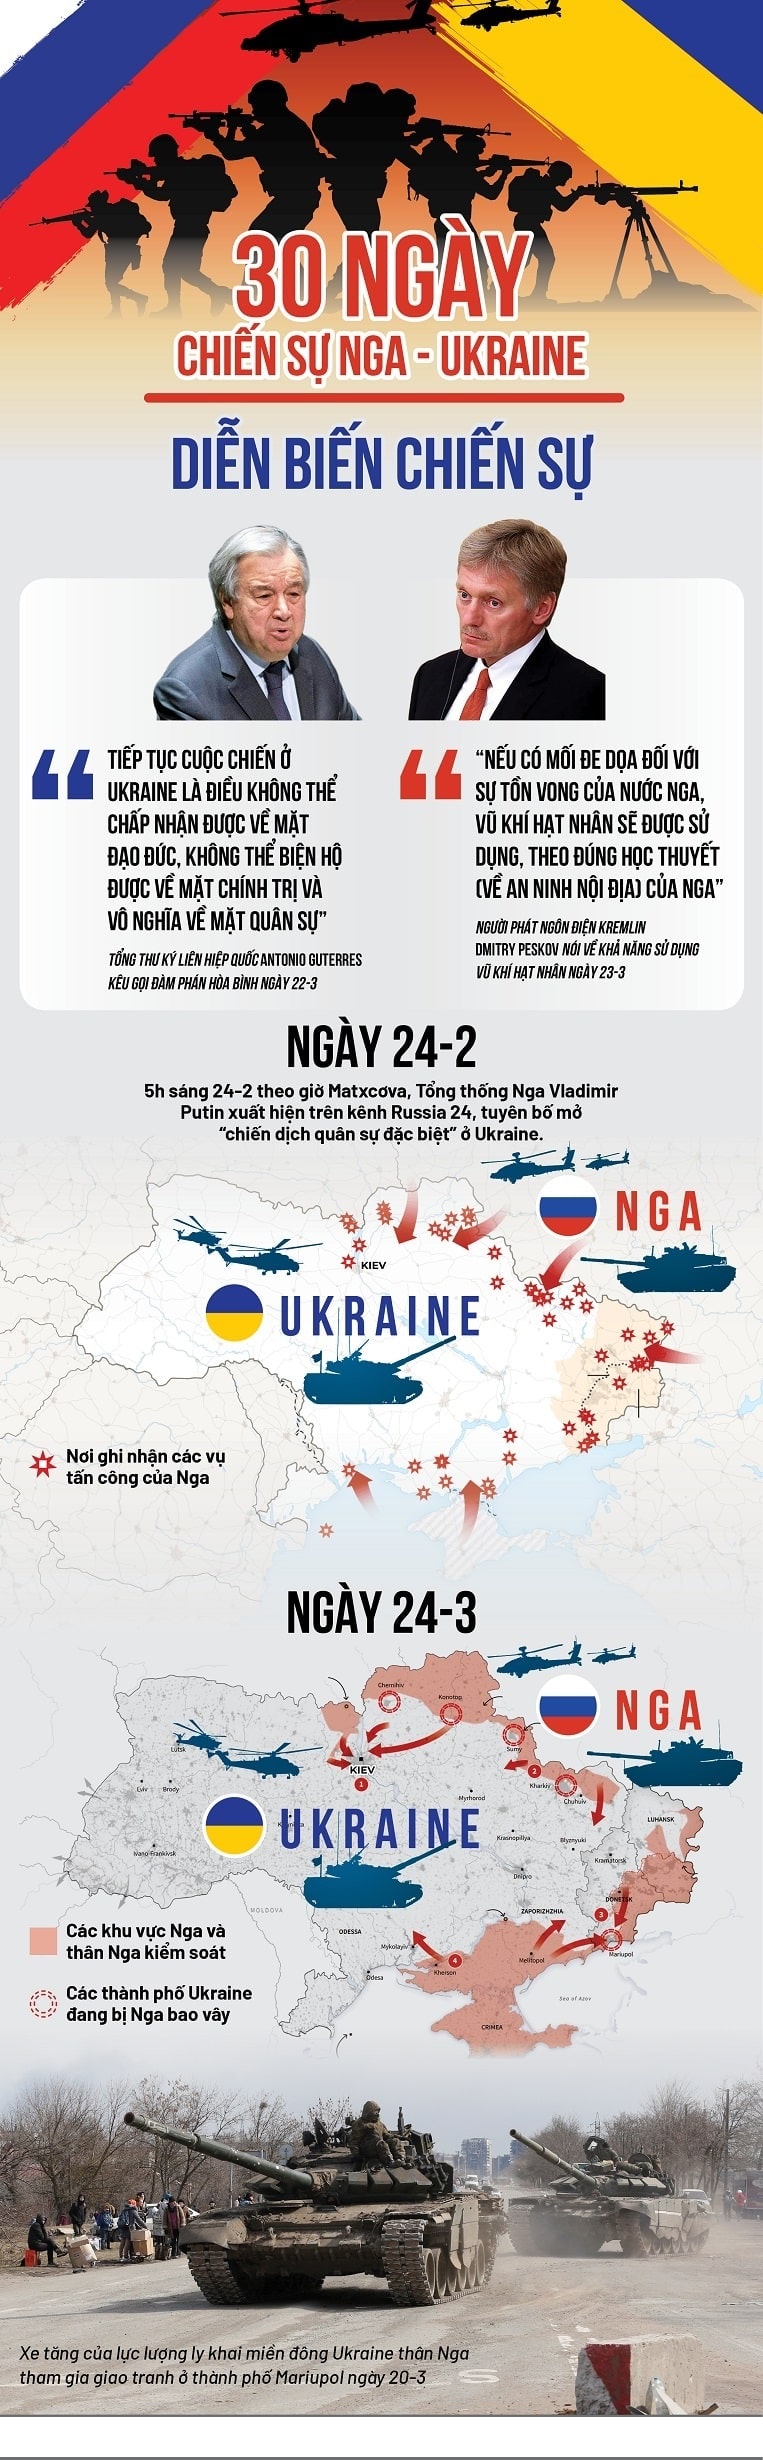 30 ngay dien bien vansudia.net min min - Cục diện chiến sự Ukraine sau 30 ngày